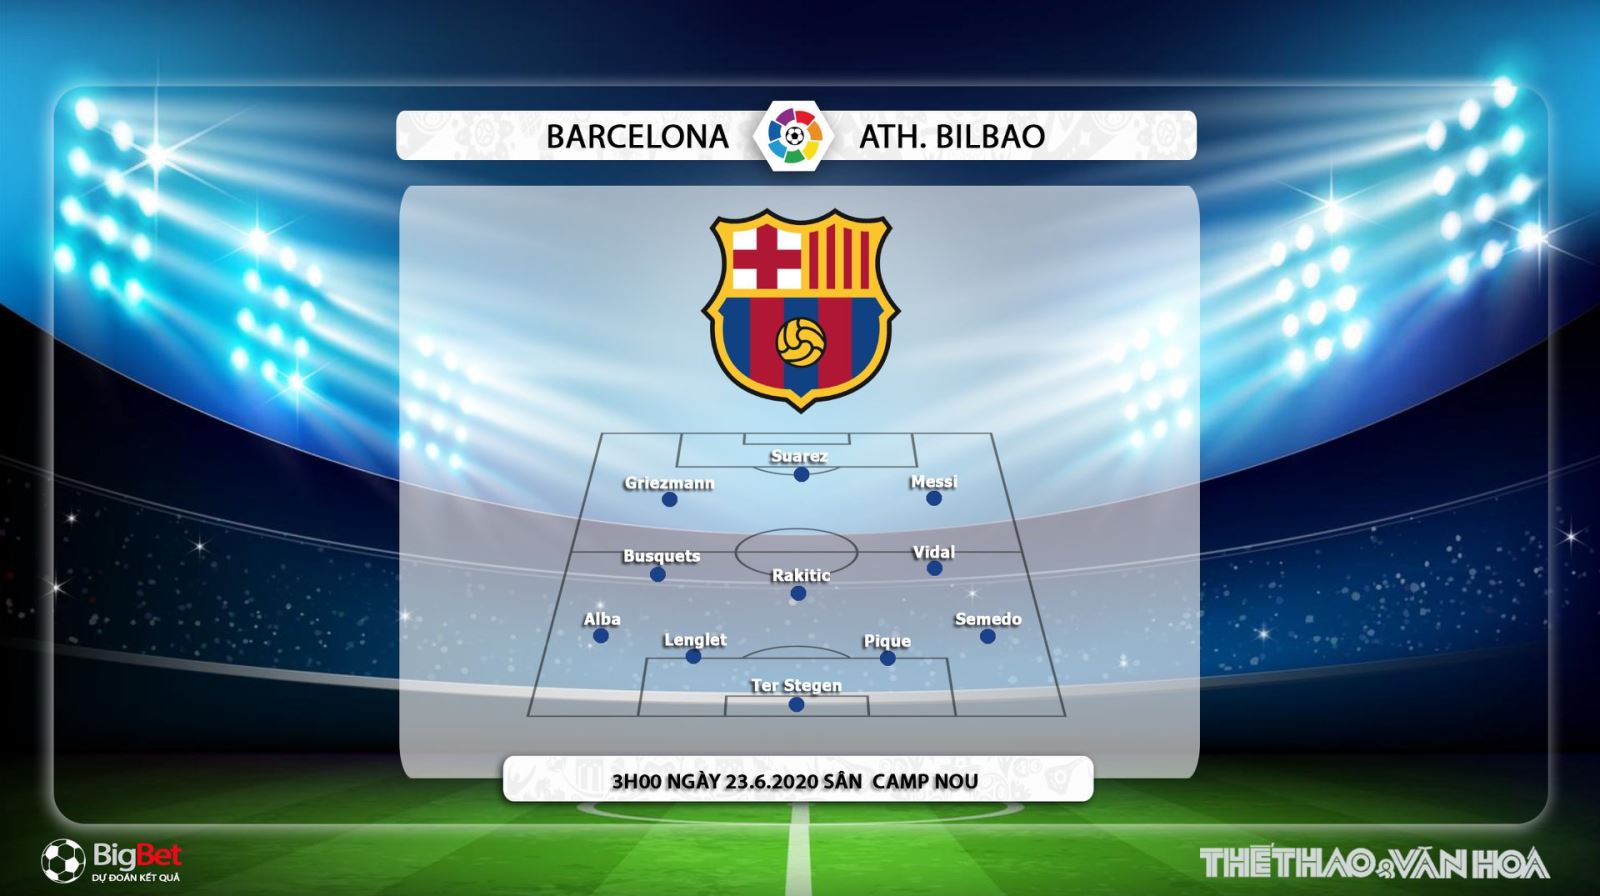 Barcelona vs Athletic Bilbao, Barca, Athletic Bilbao, nhận định bóng đá, kèo bóng đá, trực tiếp bóng đá, bóng đá, lịch thi đấu, La Liga